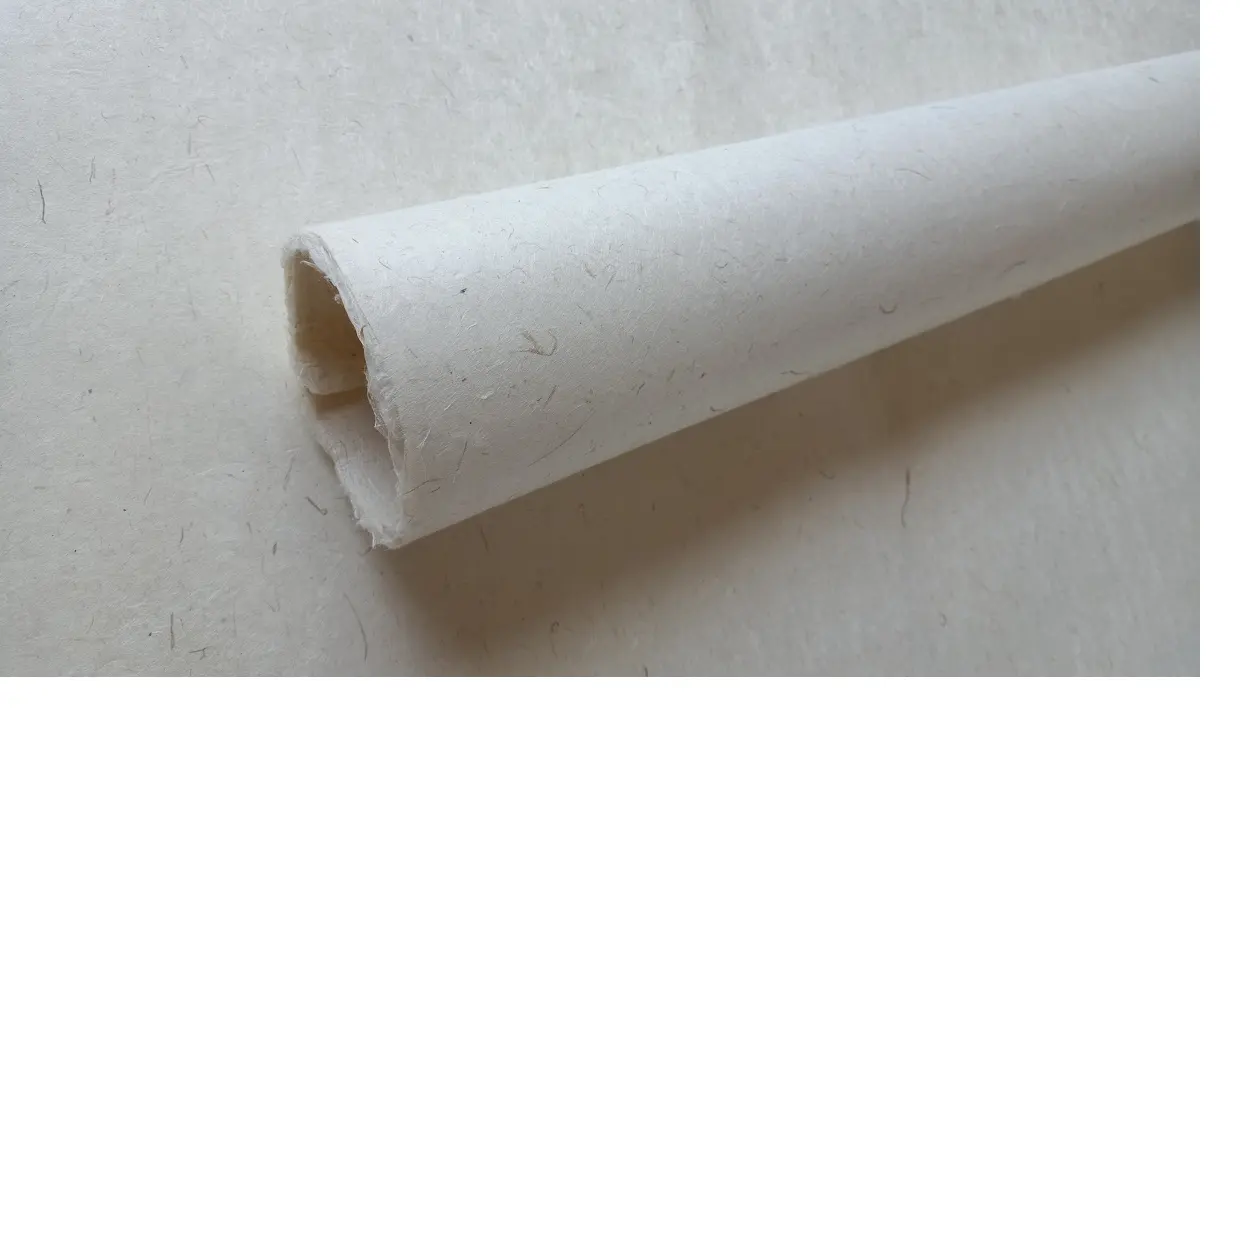 サイズ56*76 CMの天然lokta手作り紙シートは、再販に適したジャーナルメーカーやブックバインダーに最適です